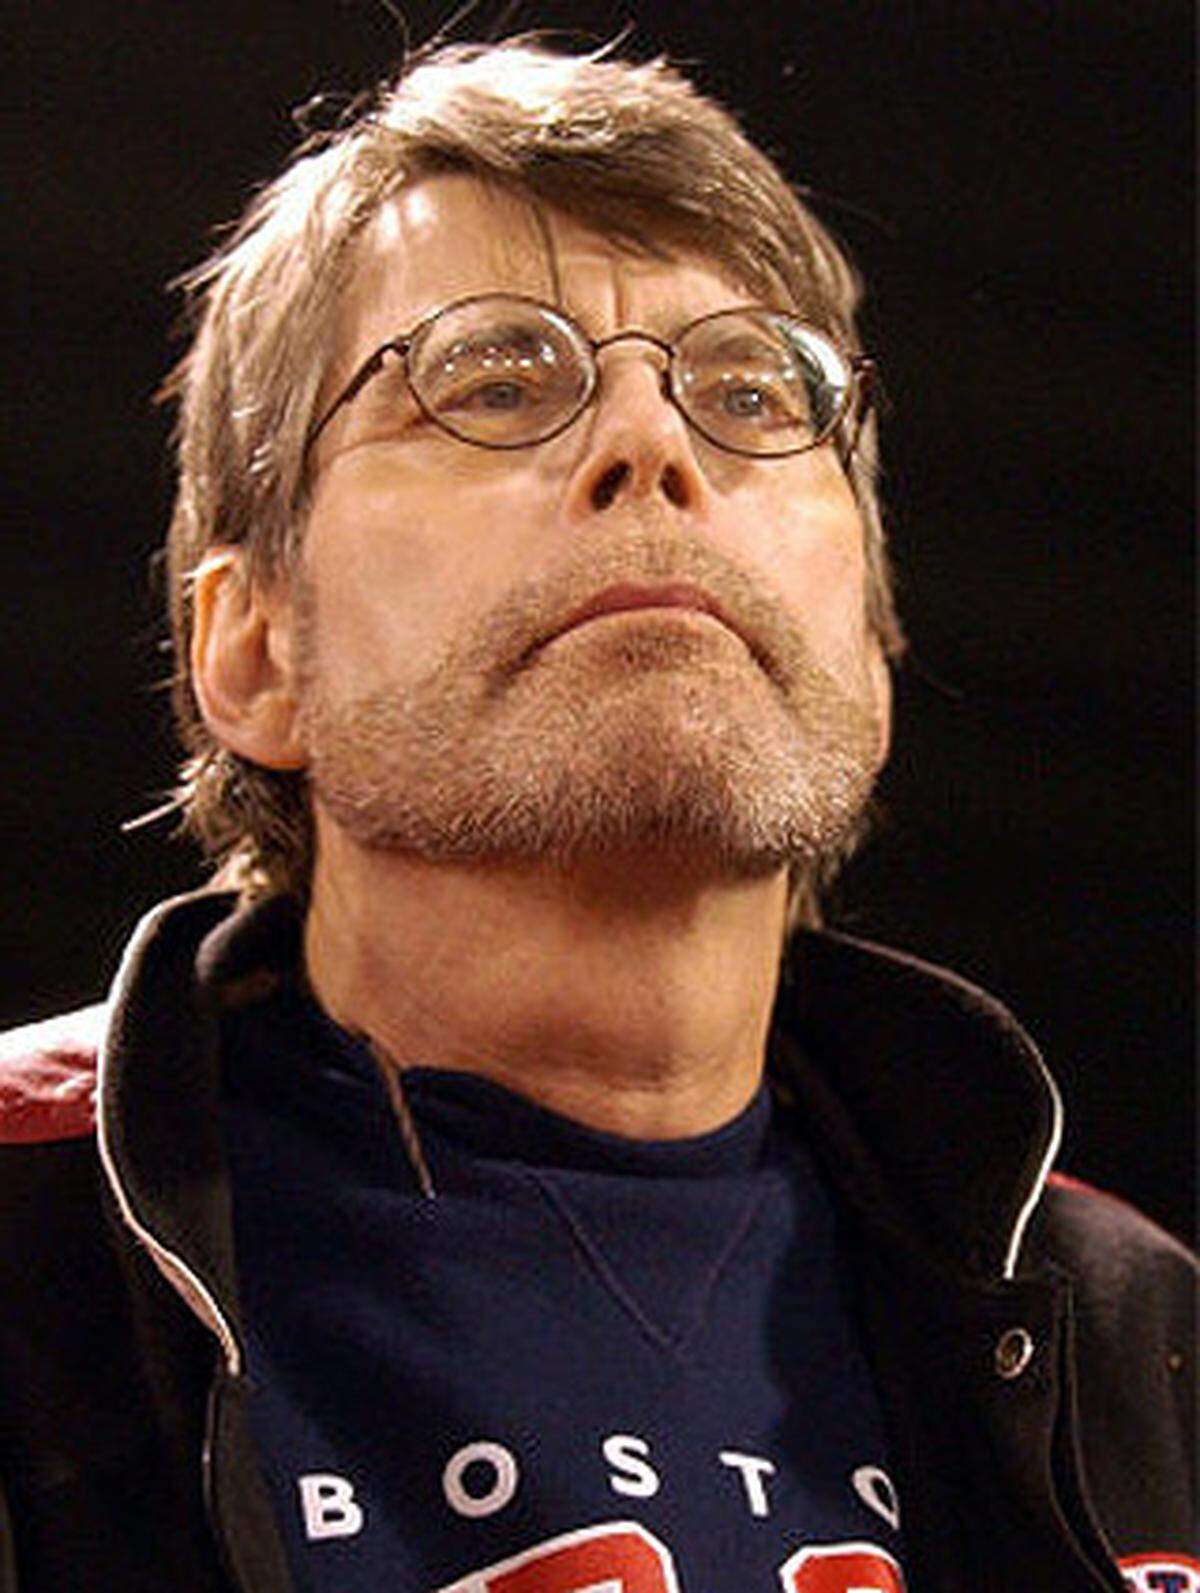 Stephen King verarbeitete in seinen Büchern immer auch persönliche Erlebnisse: So spielen Werke wie "The Dark Tower" und "Stark - The Dark Half" auf seinen tragischen Autounfall, seine Alkoholprobleme und das Verhältnis zu seinen Fans an.